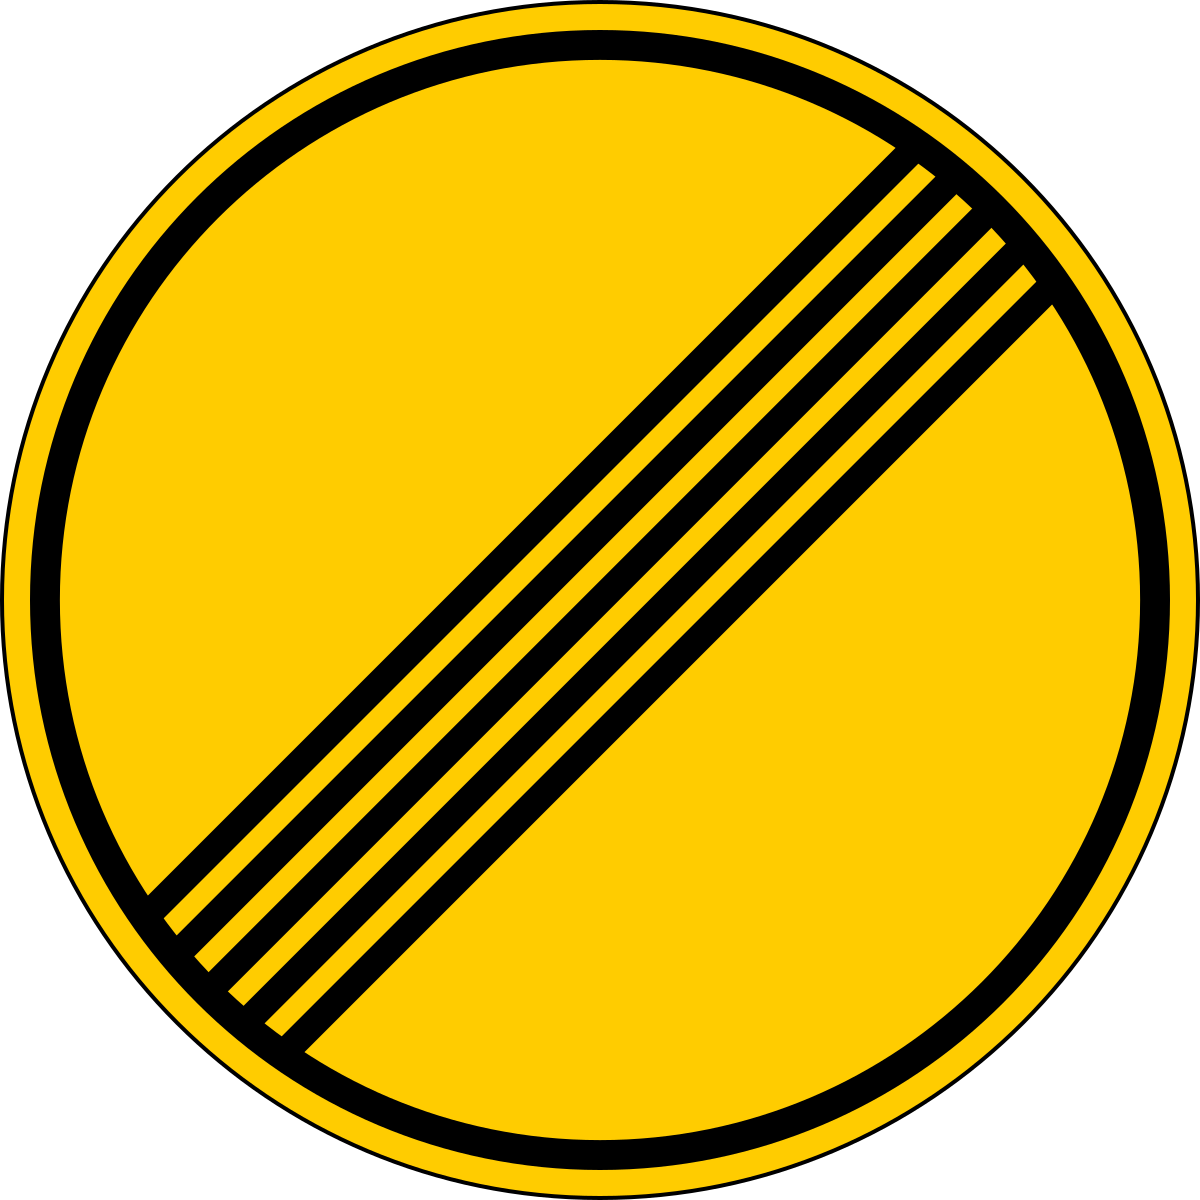 Что означает три полоски. 3.31 Конец зоны всех ограничений. Желтый дорожный знак с полосками. Круглый желтый знак с полосками. Дорожный знак конец всех ограничений.